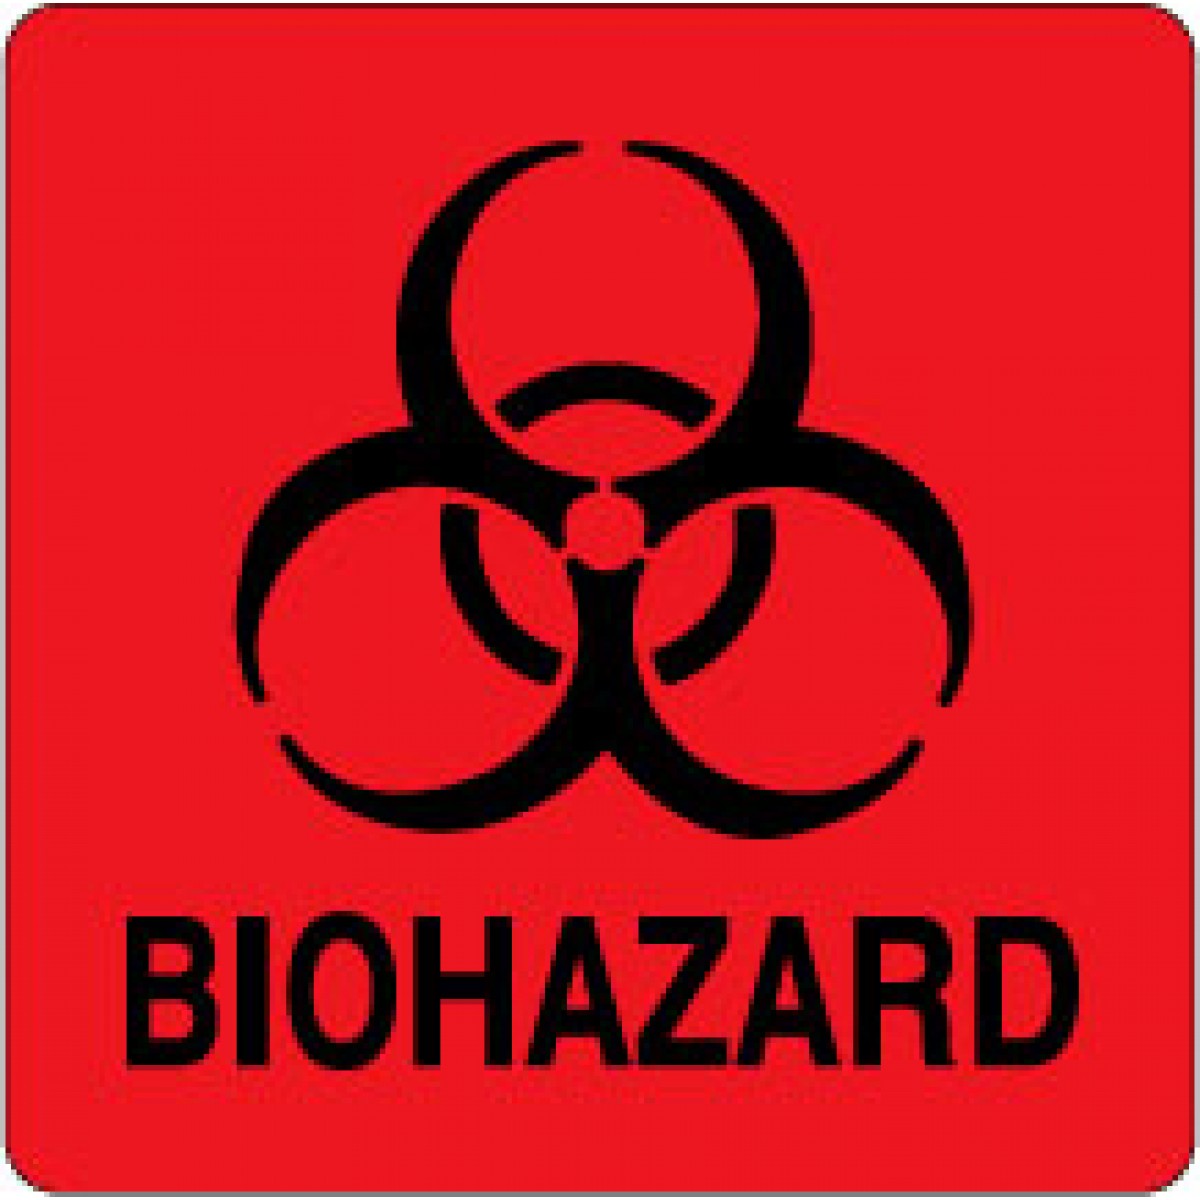 Biohazard Sign Printable - Printable Templates